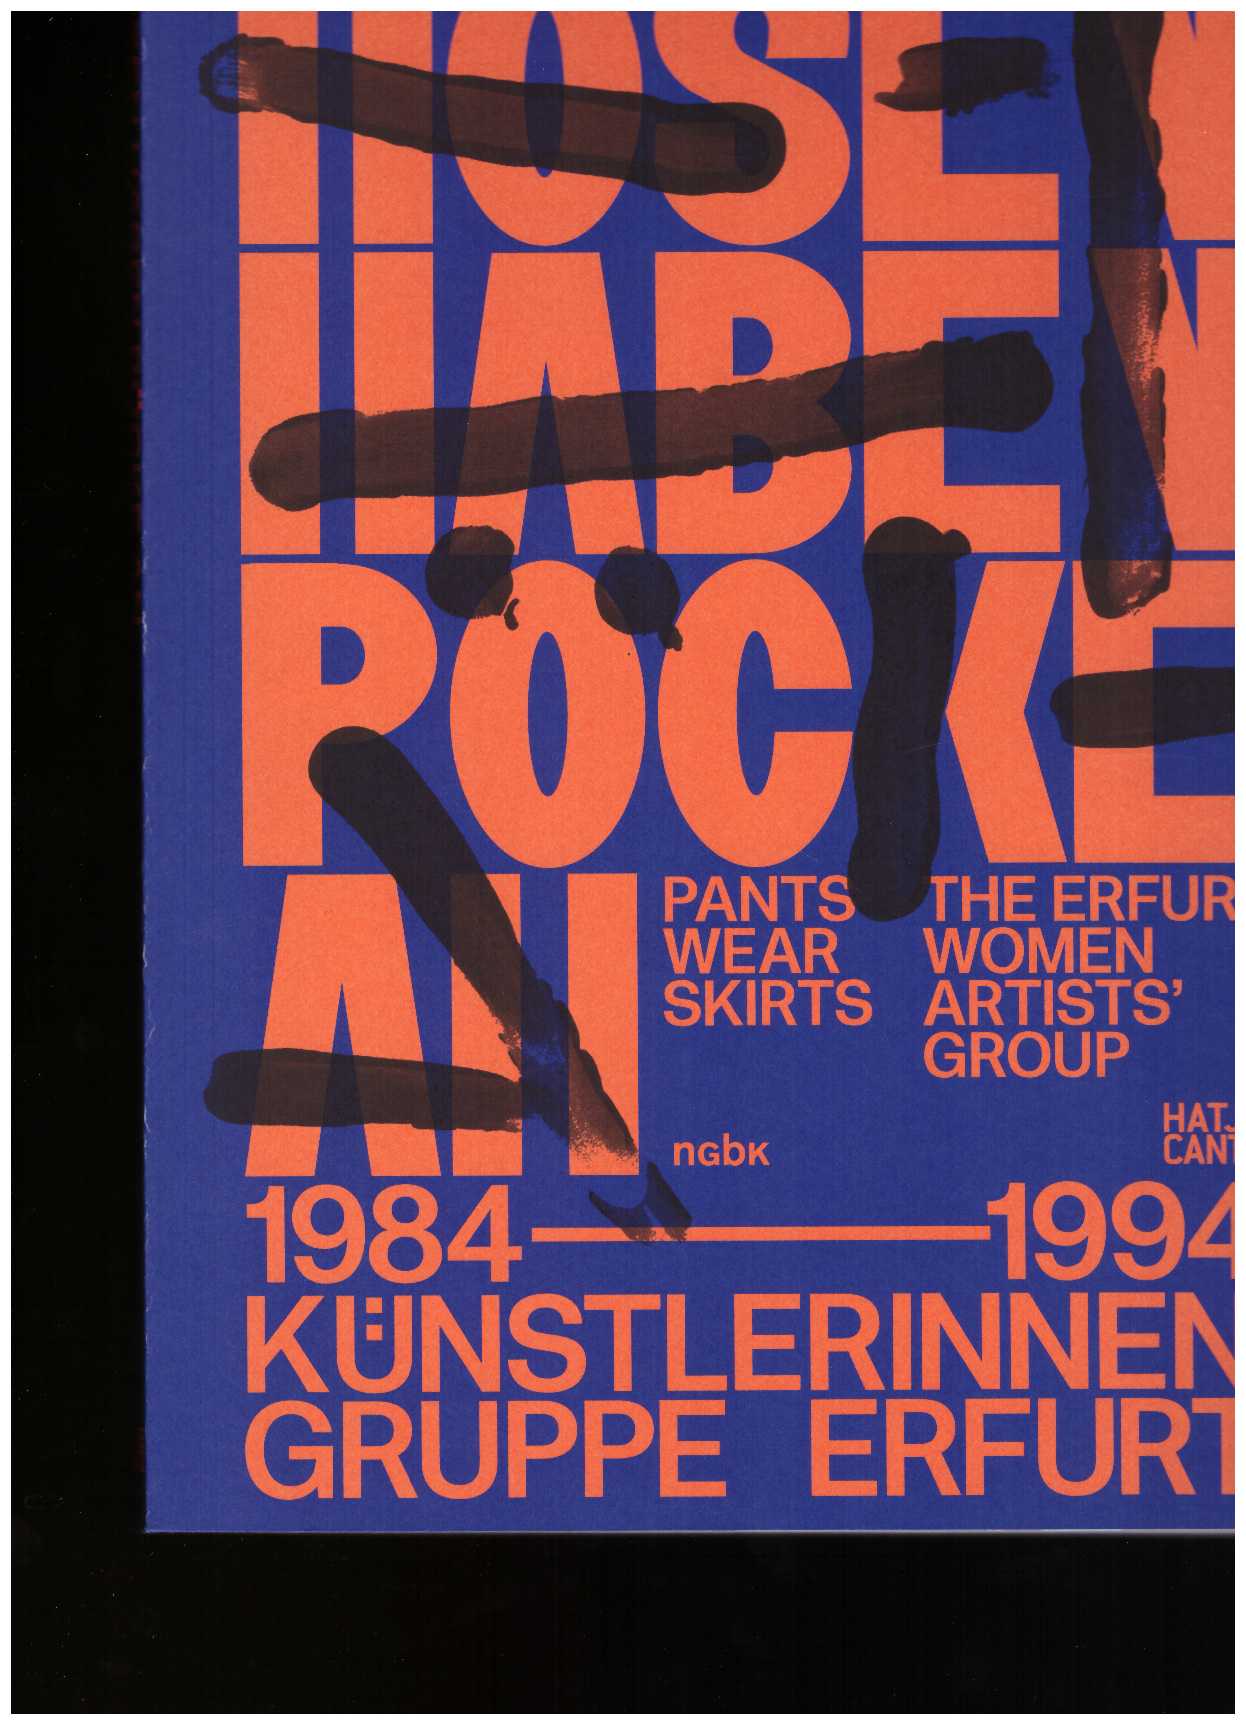 ALTMANN, Susanne; KRASZNAHORKAI, Kata; MÜLLER, Christin; SCHMIDT, Franziska; VOSS, Sonia (eds.) - Pants Wear Skirts: The Erfurt Women Artists’ Group 1984–1994 / Hosen haben Röcke an: Künstlerinnengruppe Erfurt